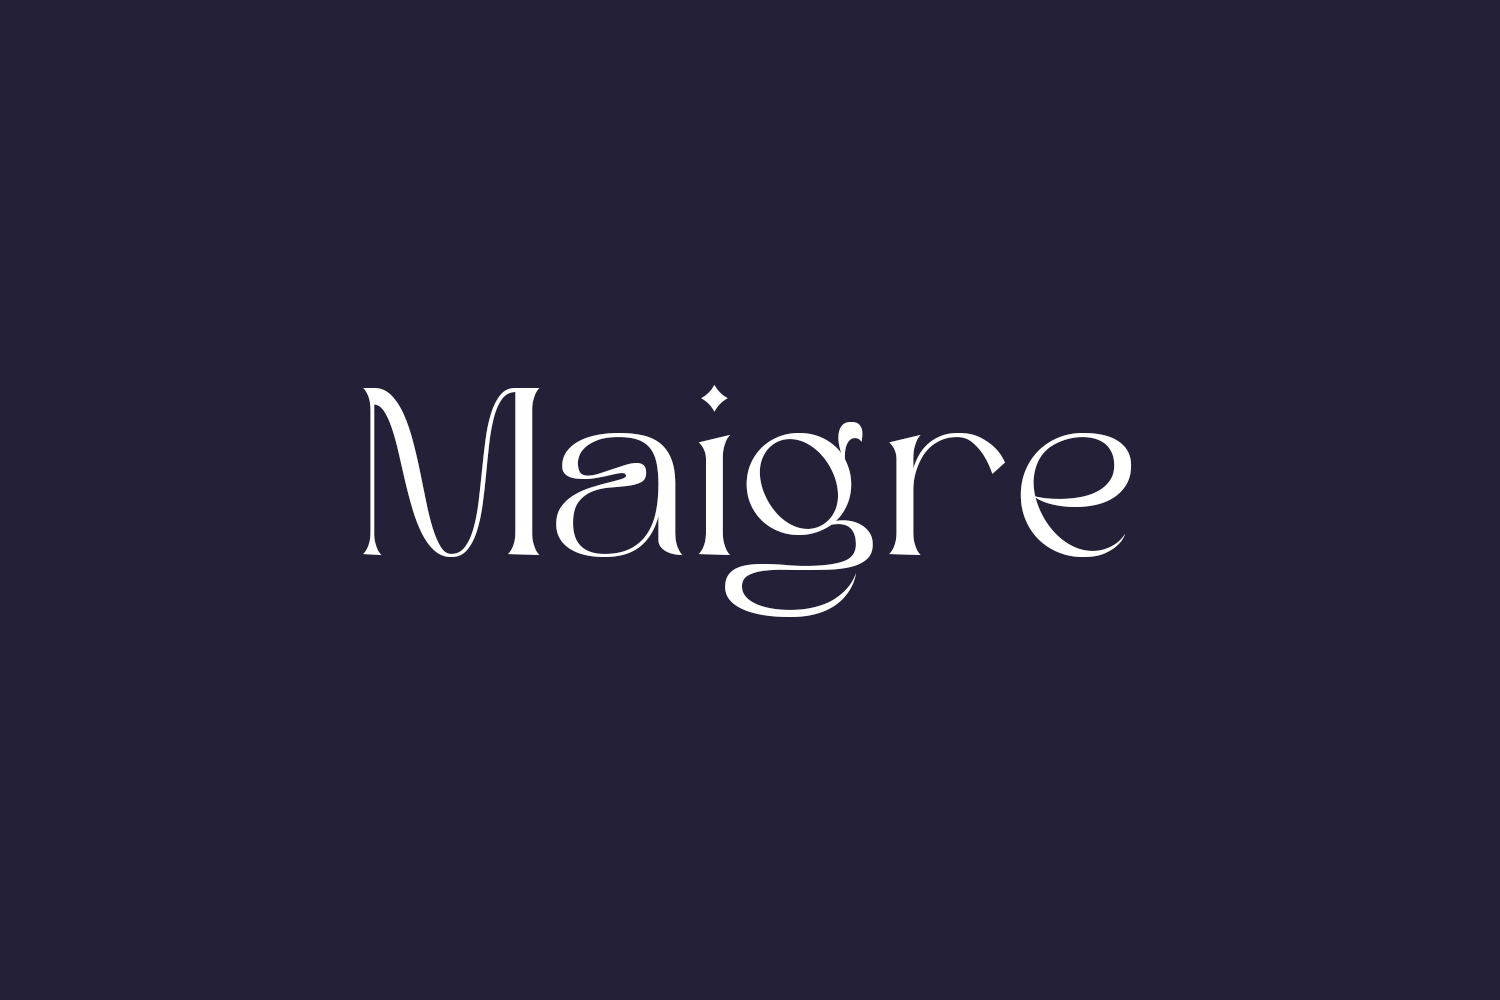 Maigre Free Font